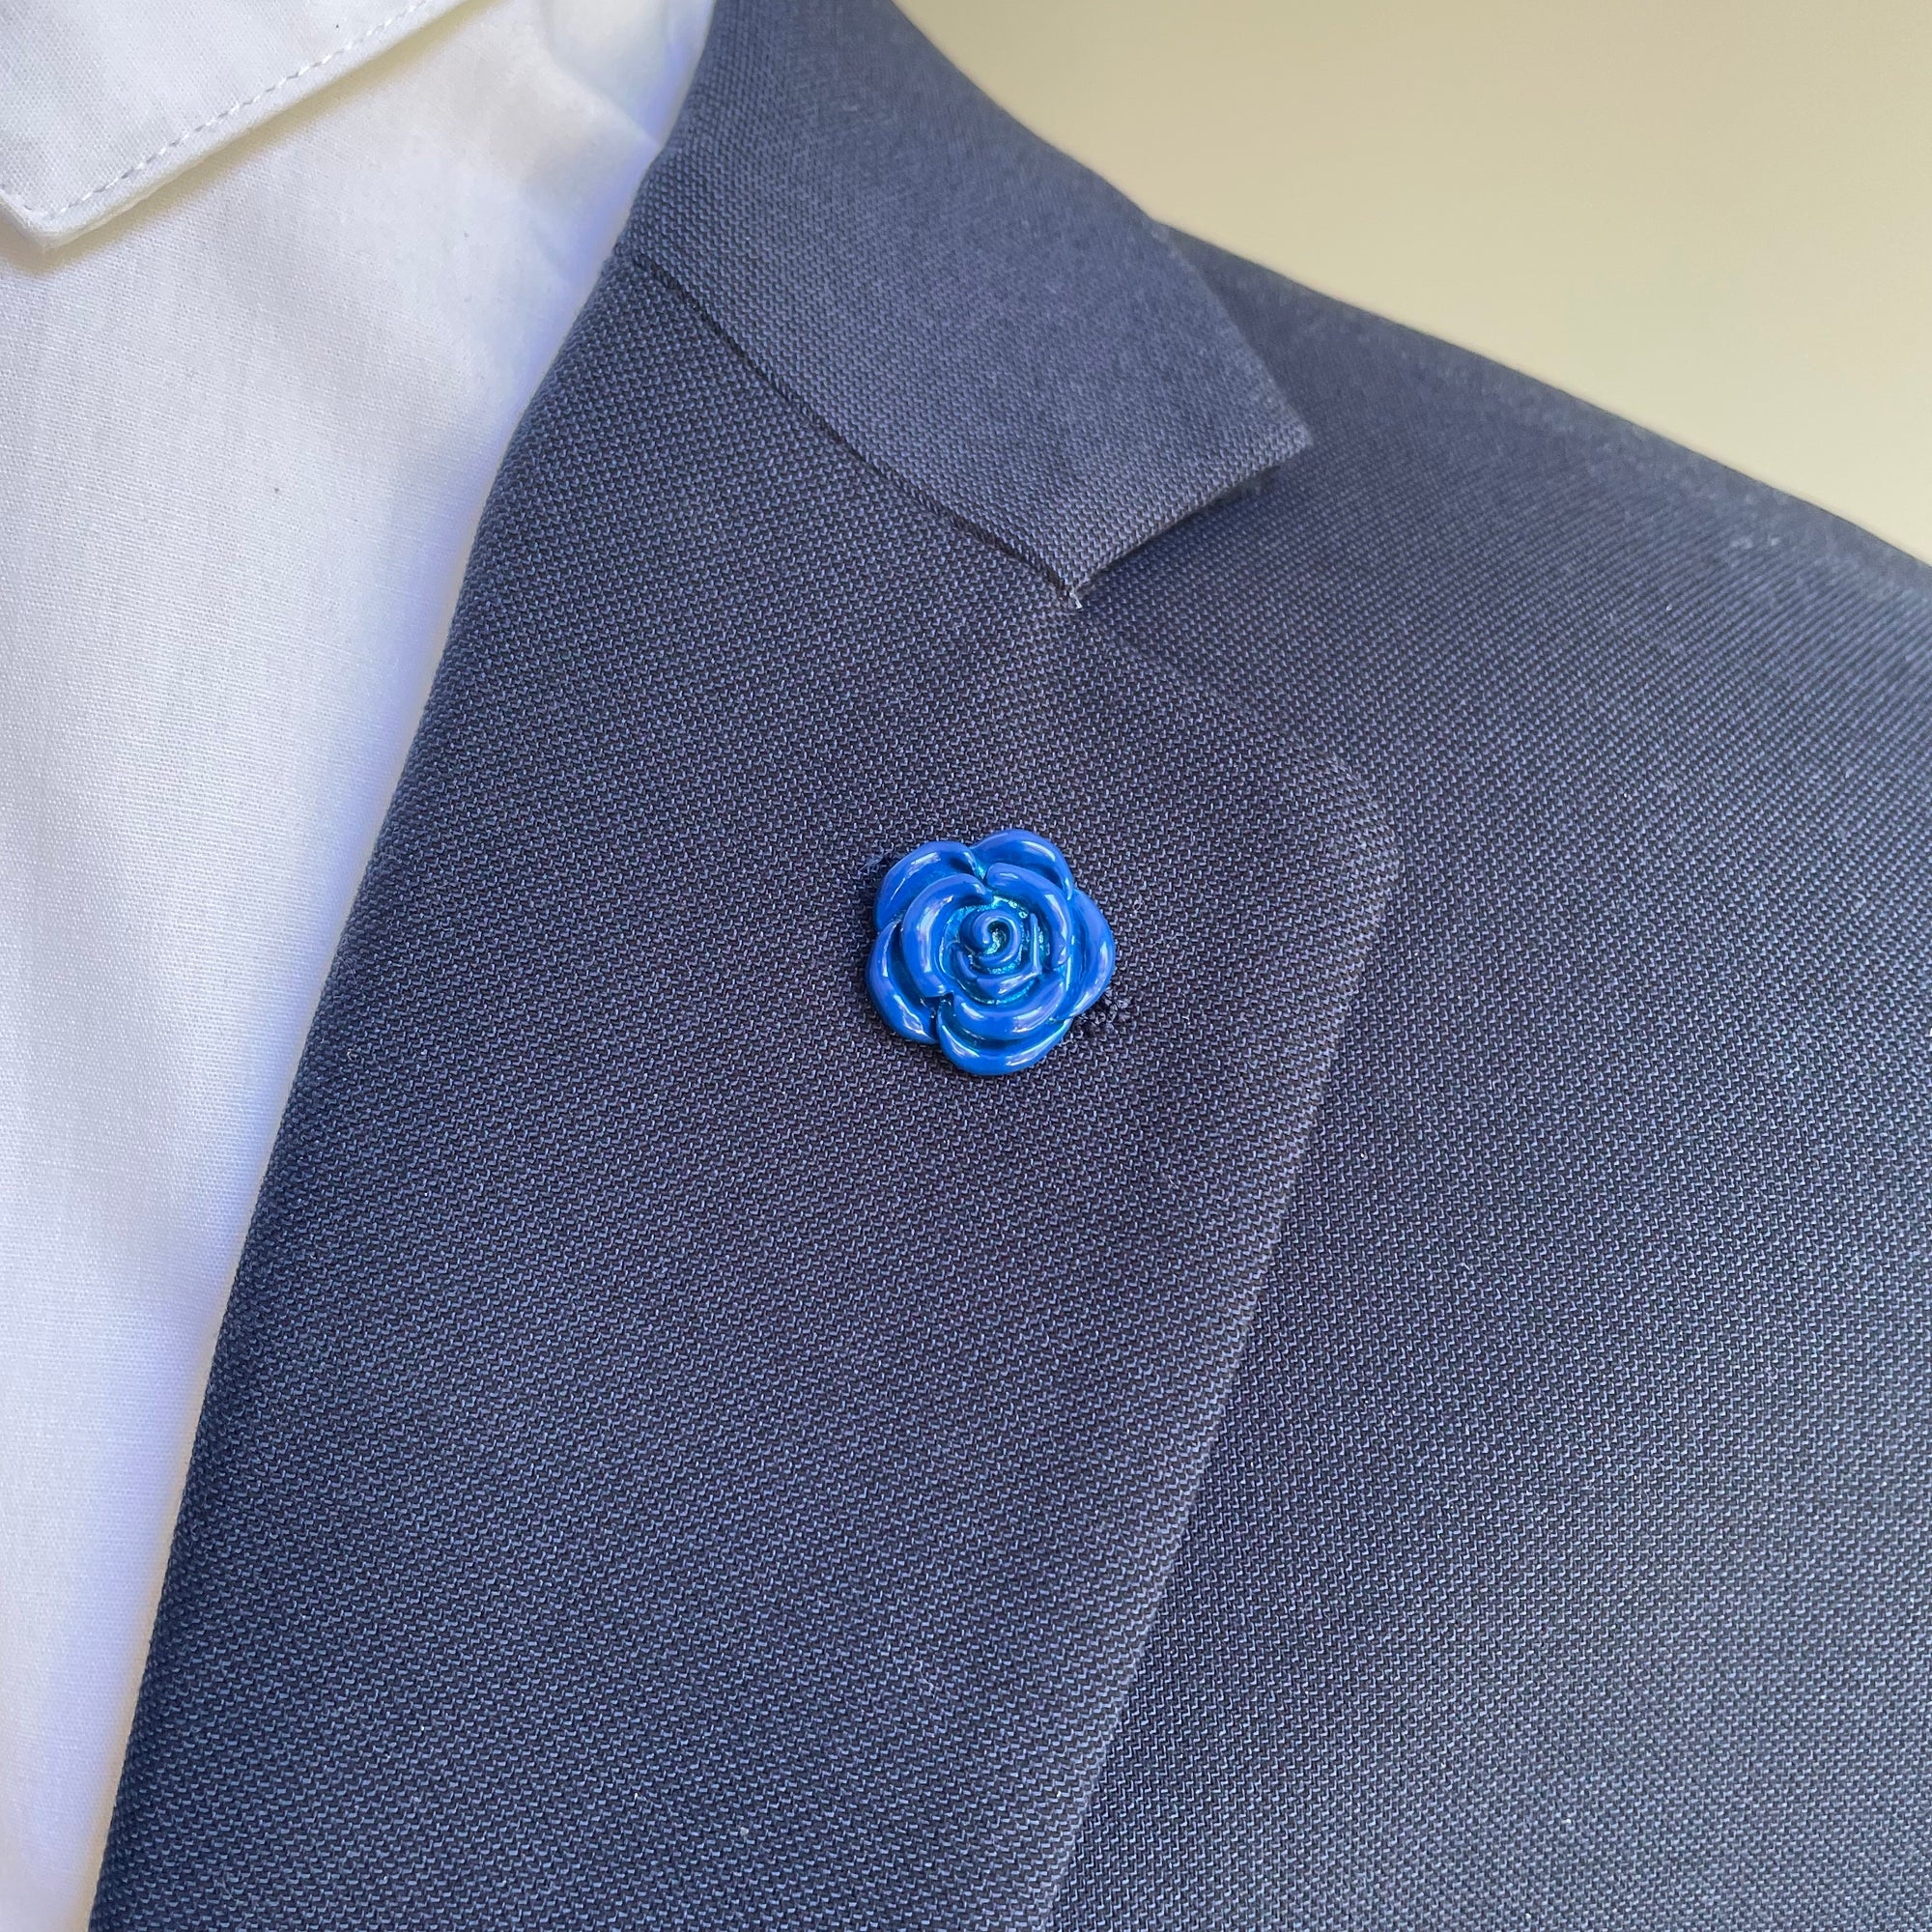 Blue Enamel Flower Lapel Pin